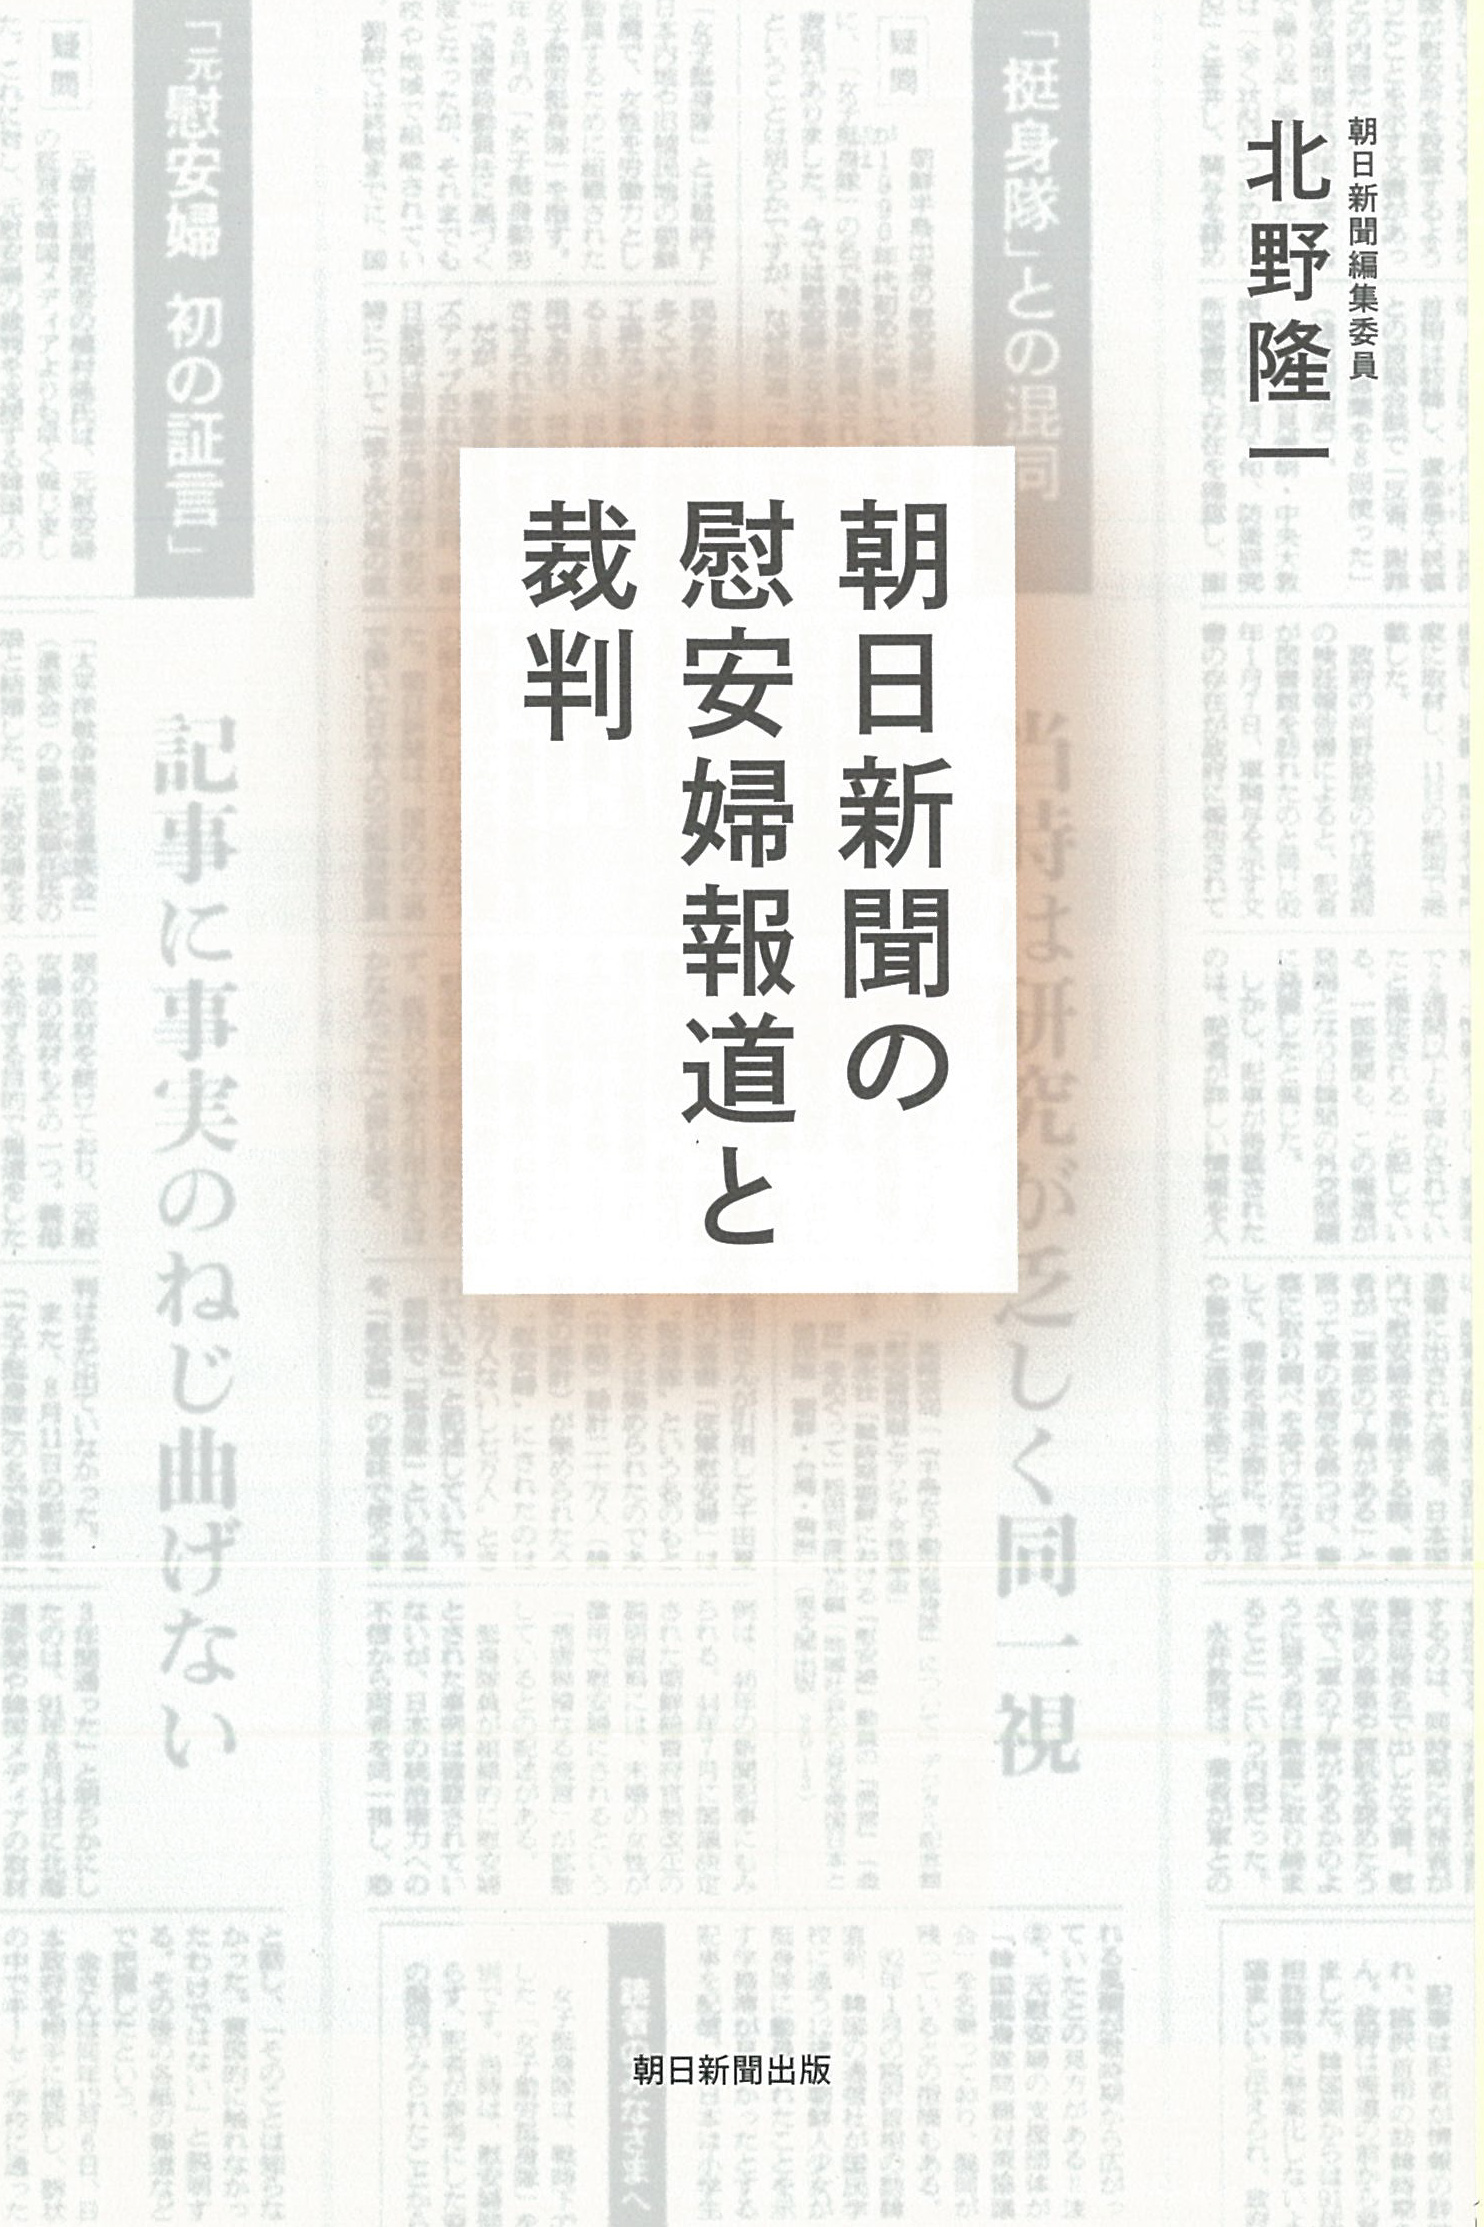 朝日新聞の慰安婦報道と裁判の商品画像